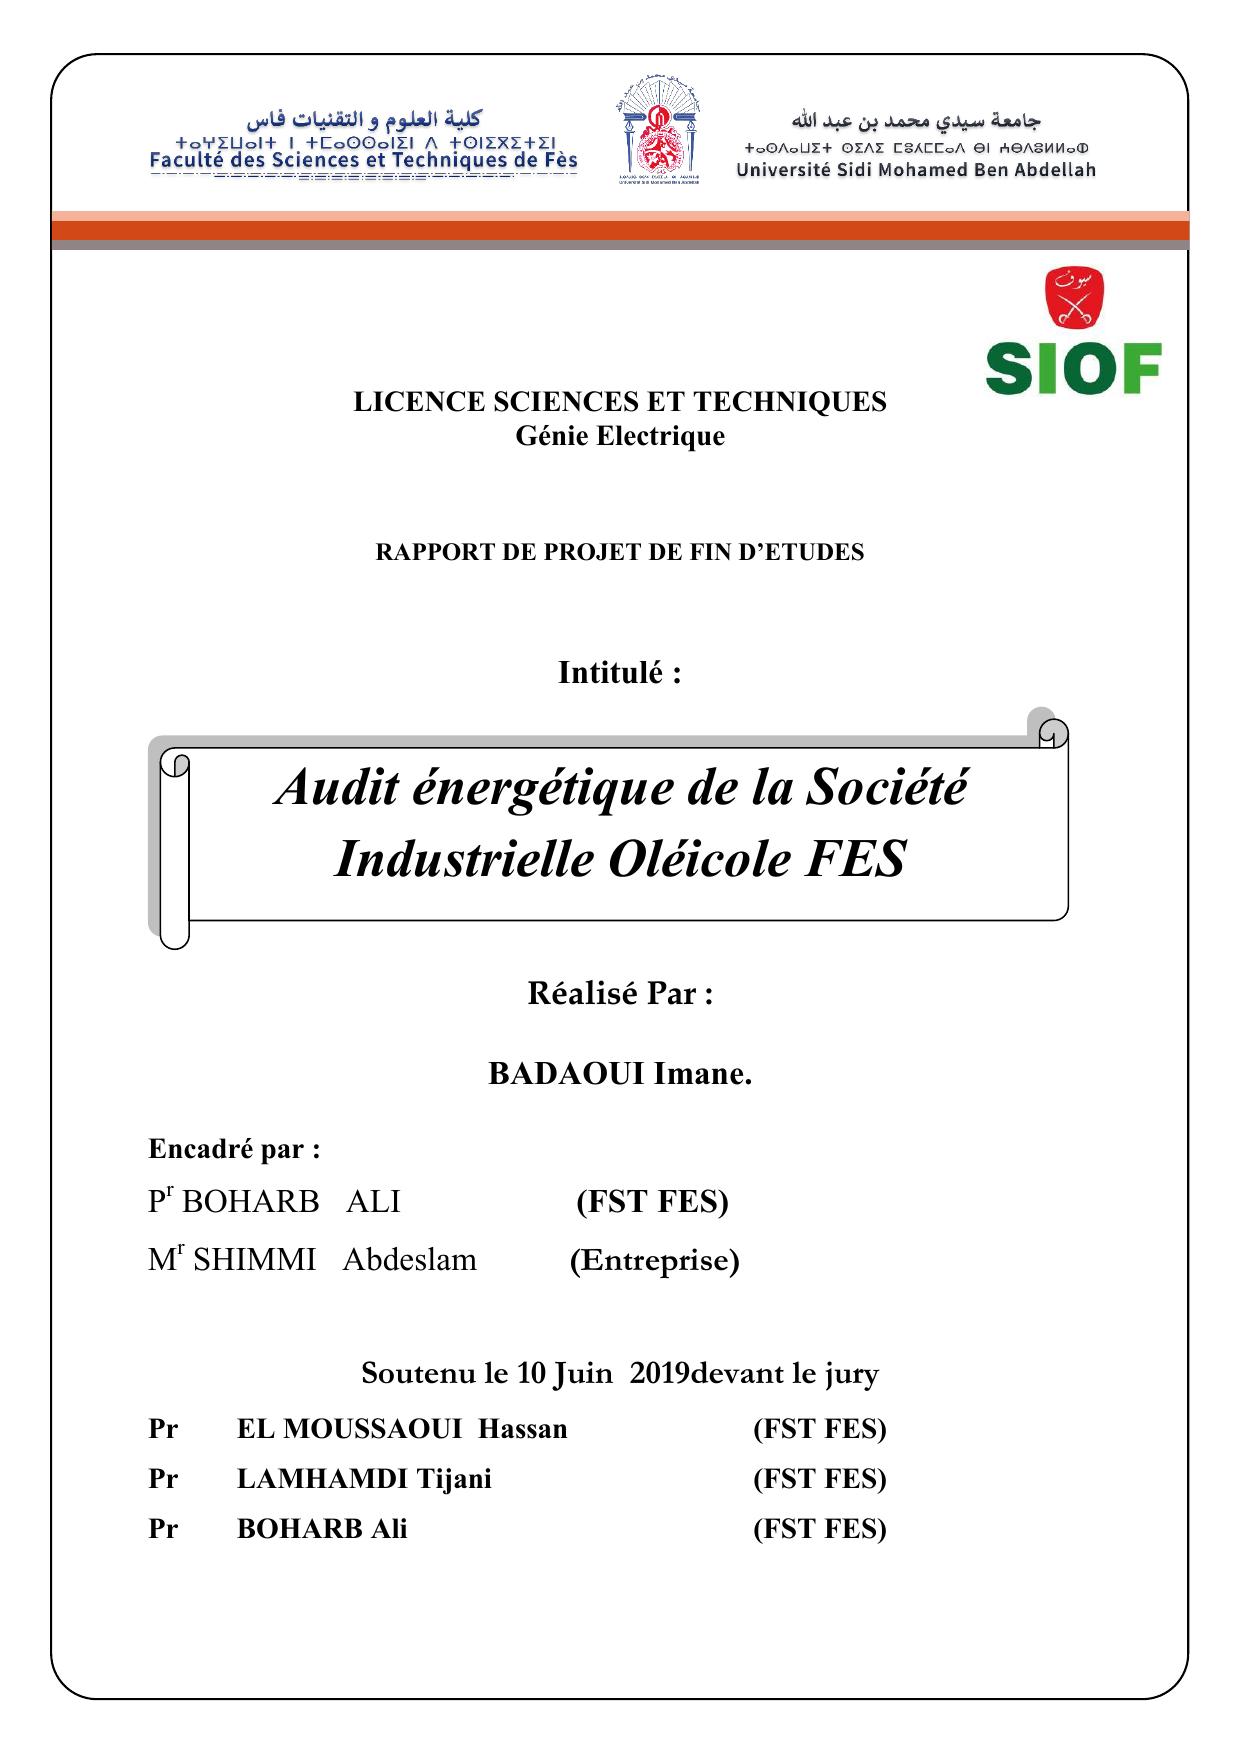 Audit énergétique de la Société Industrielle Oléicole FES